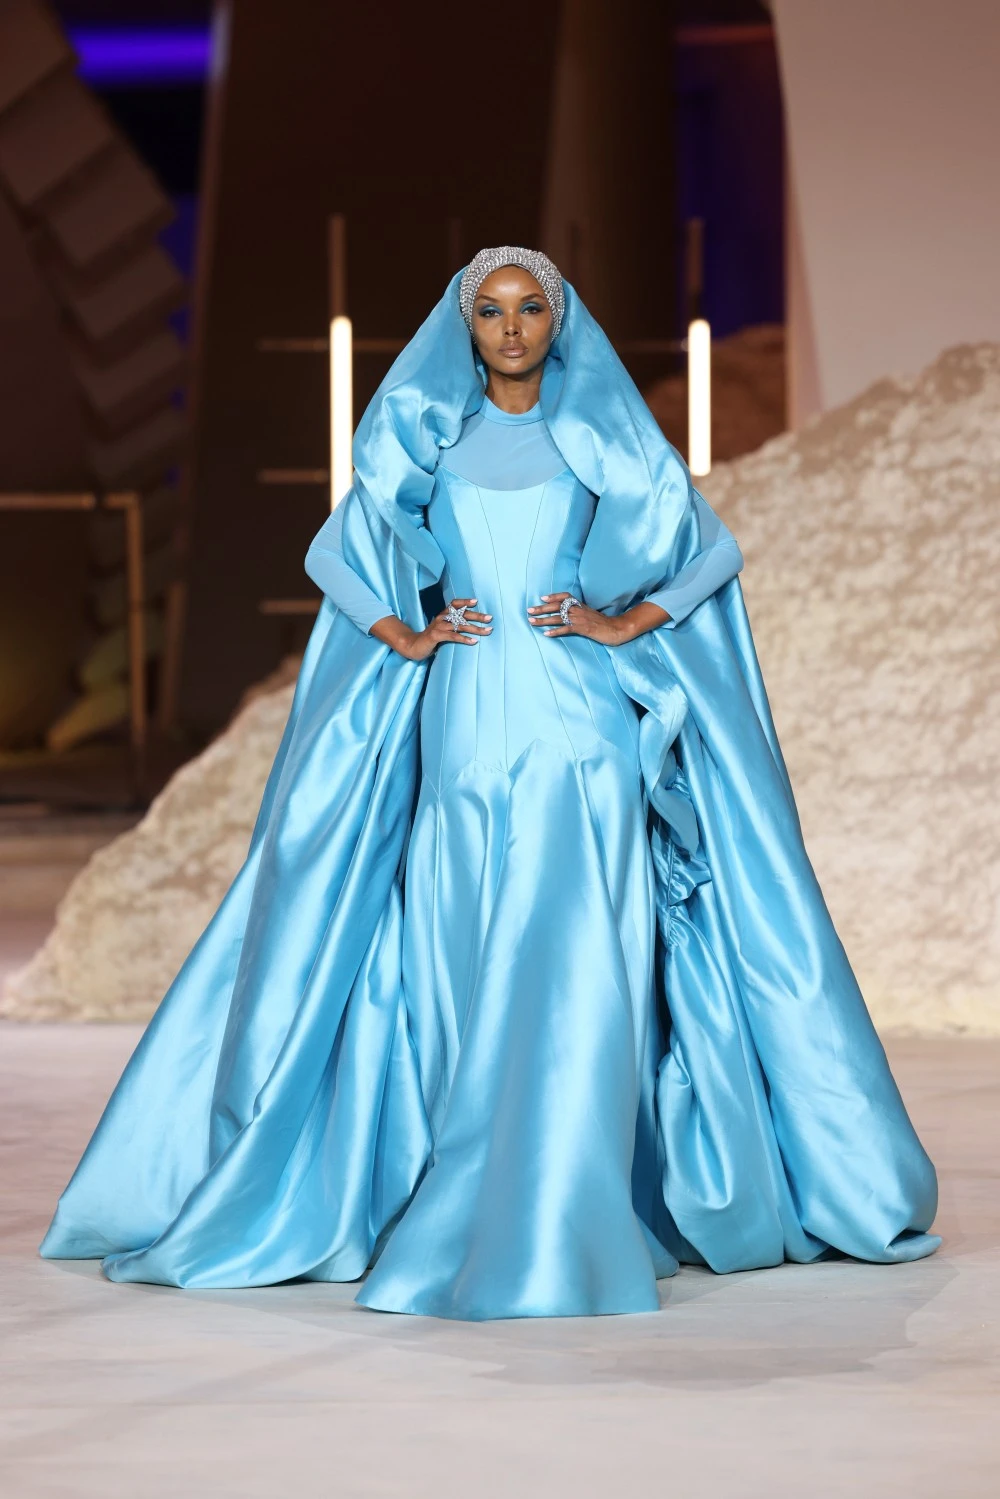 أسبوع الأزياء في الرياض: انتفاضة إبداعية جديدة للمملكة